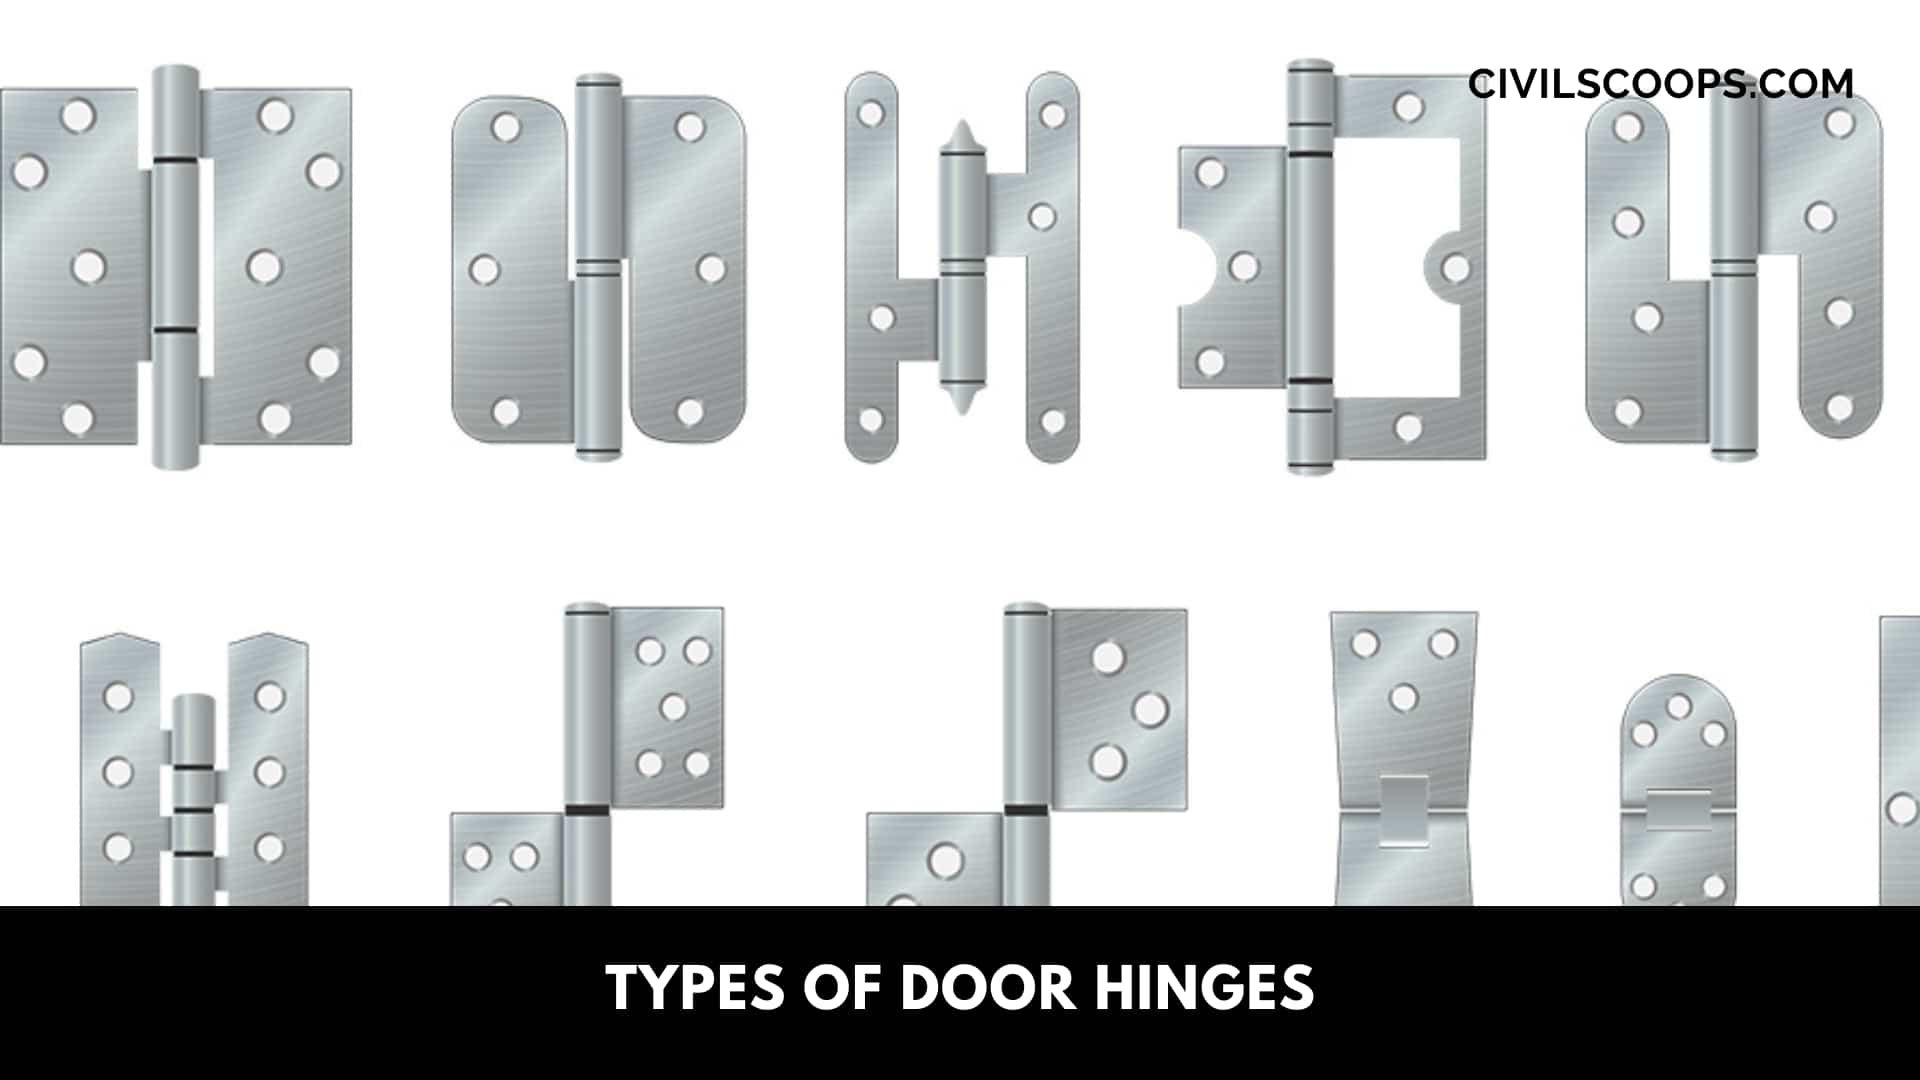 Types of Door Hinges